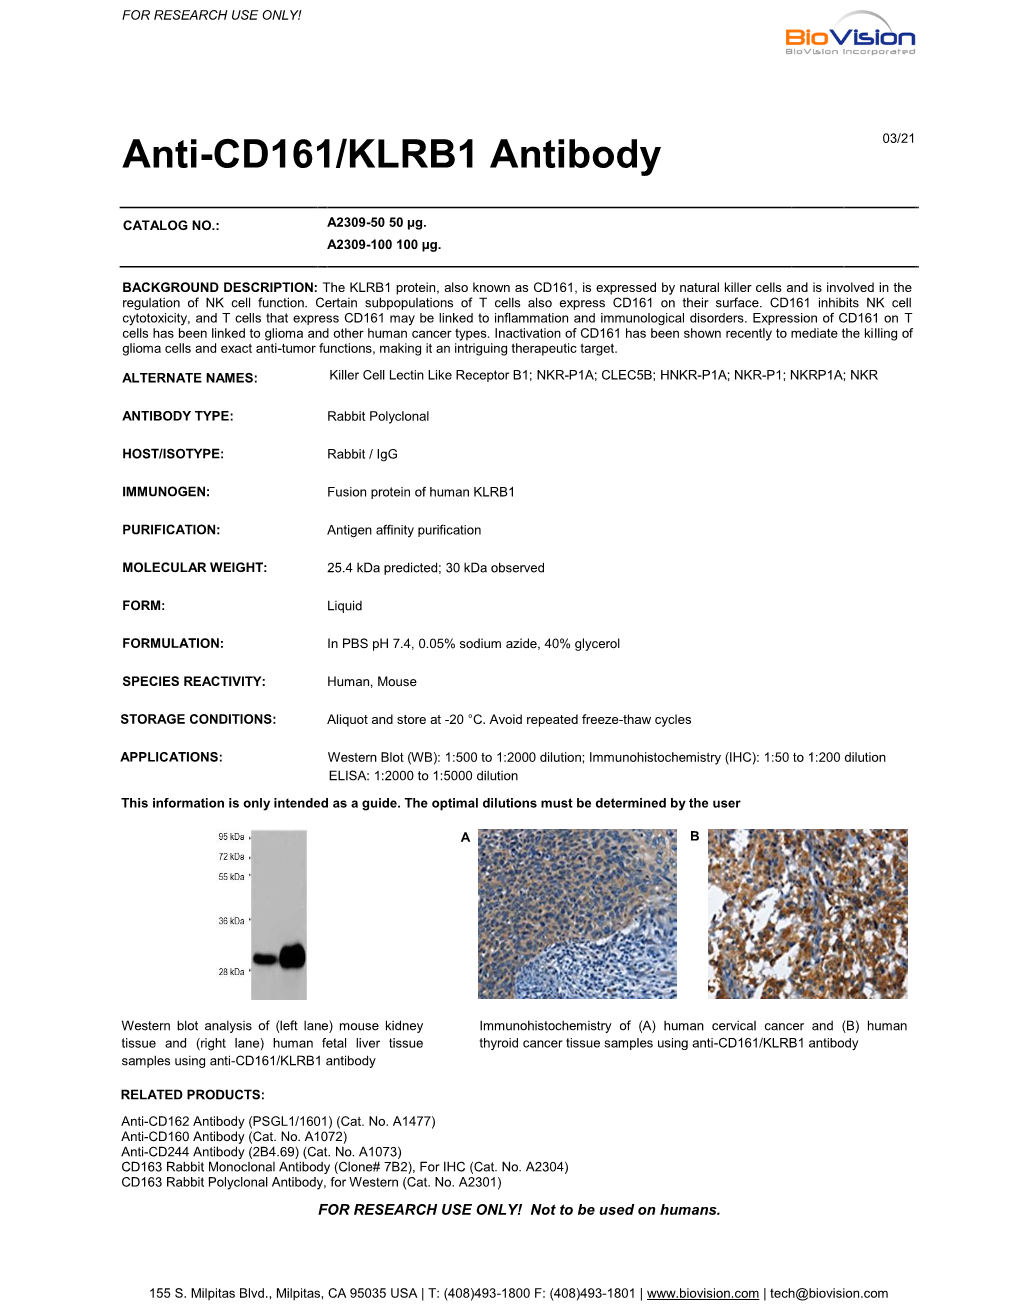 Anti-CD161/KLRB1 Antibody